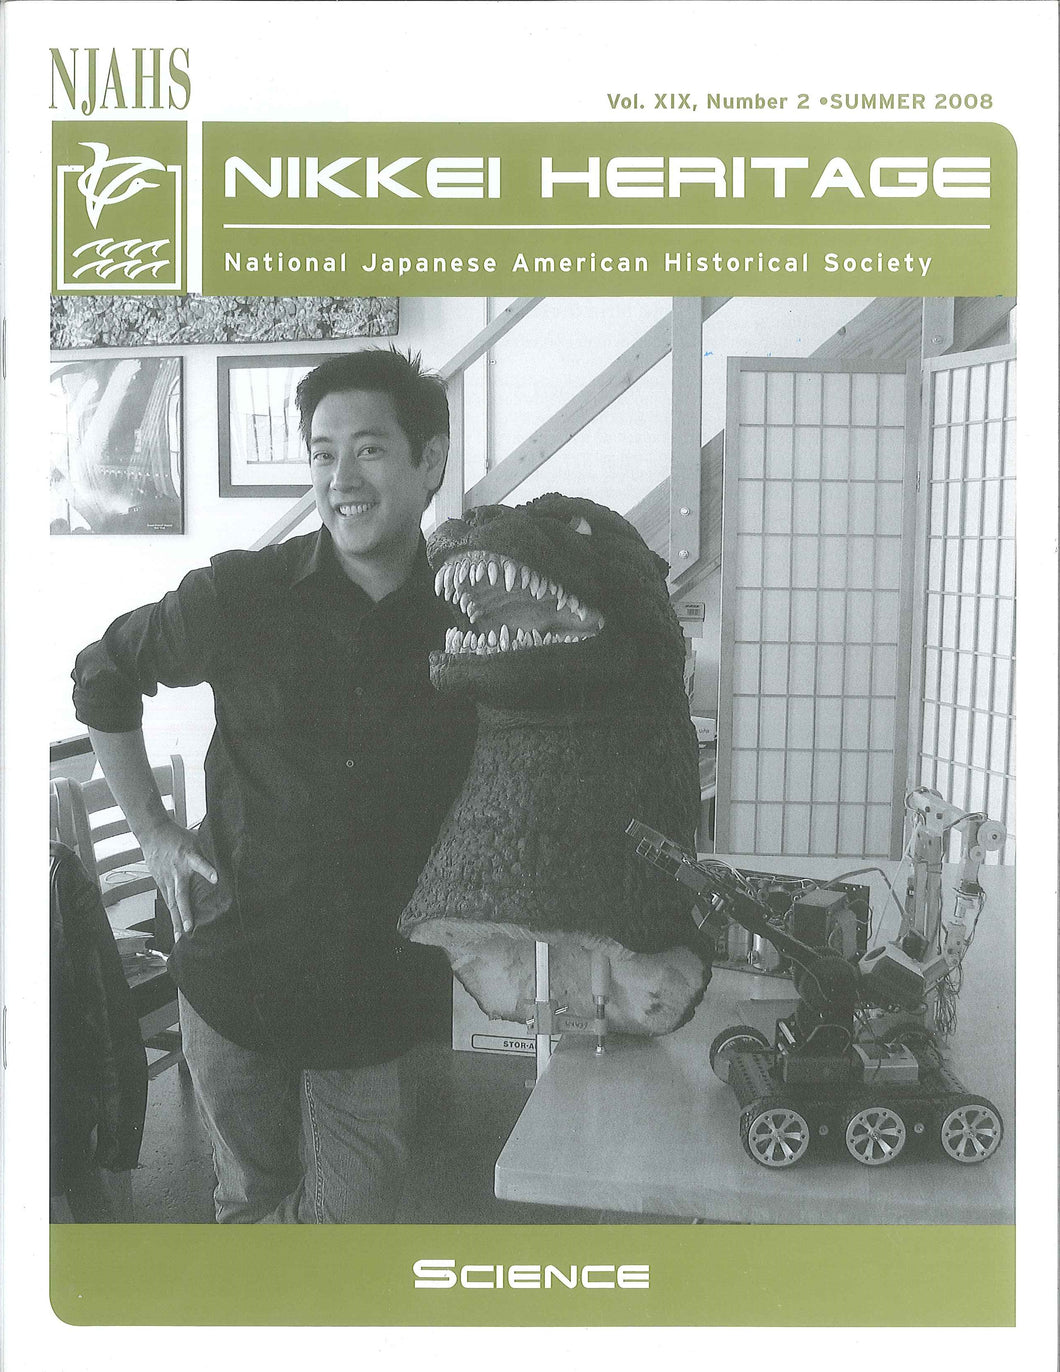 Nikkei Heritage - Science